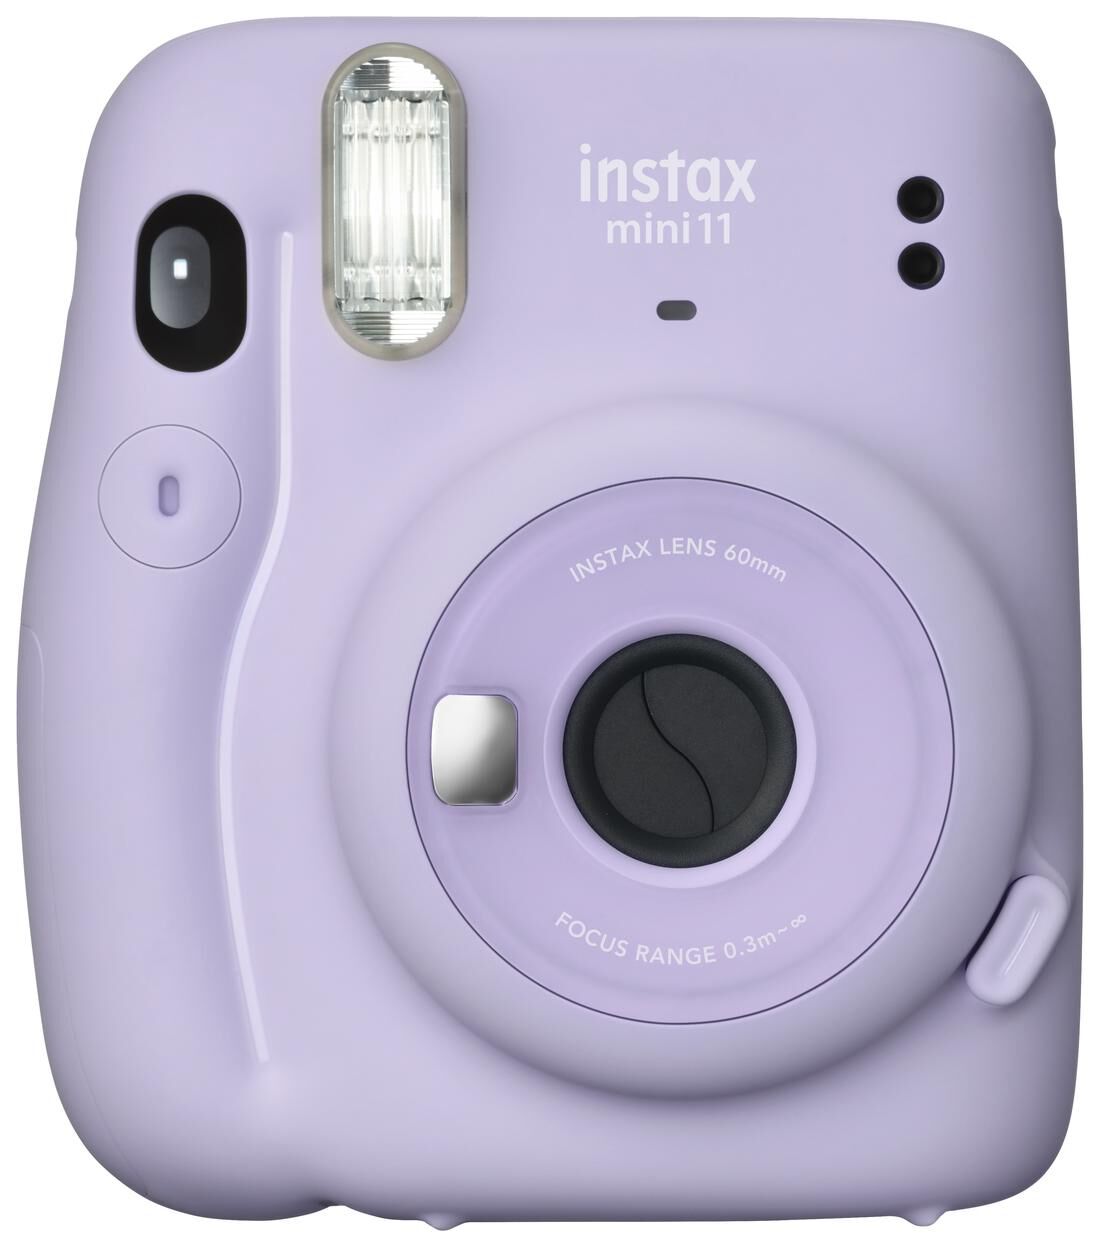 Fujifilm Instax mini 11 review | leuke instant camera voor het hele gezin